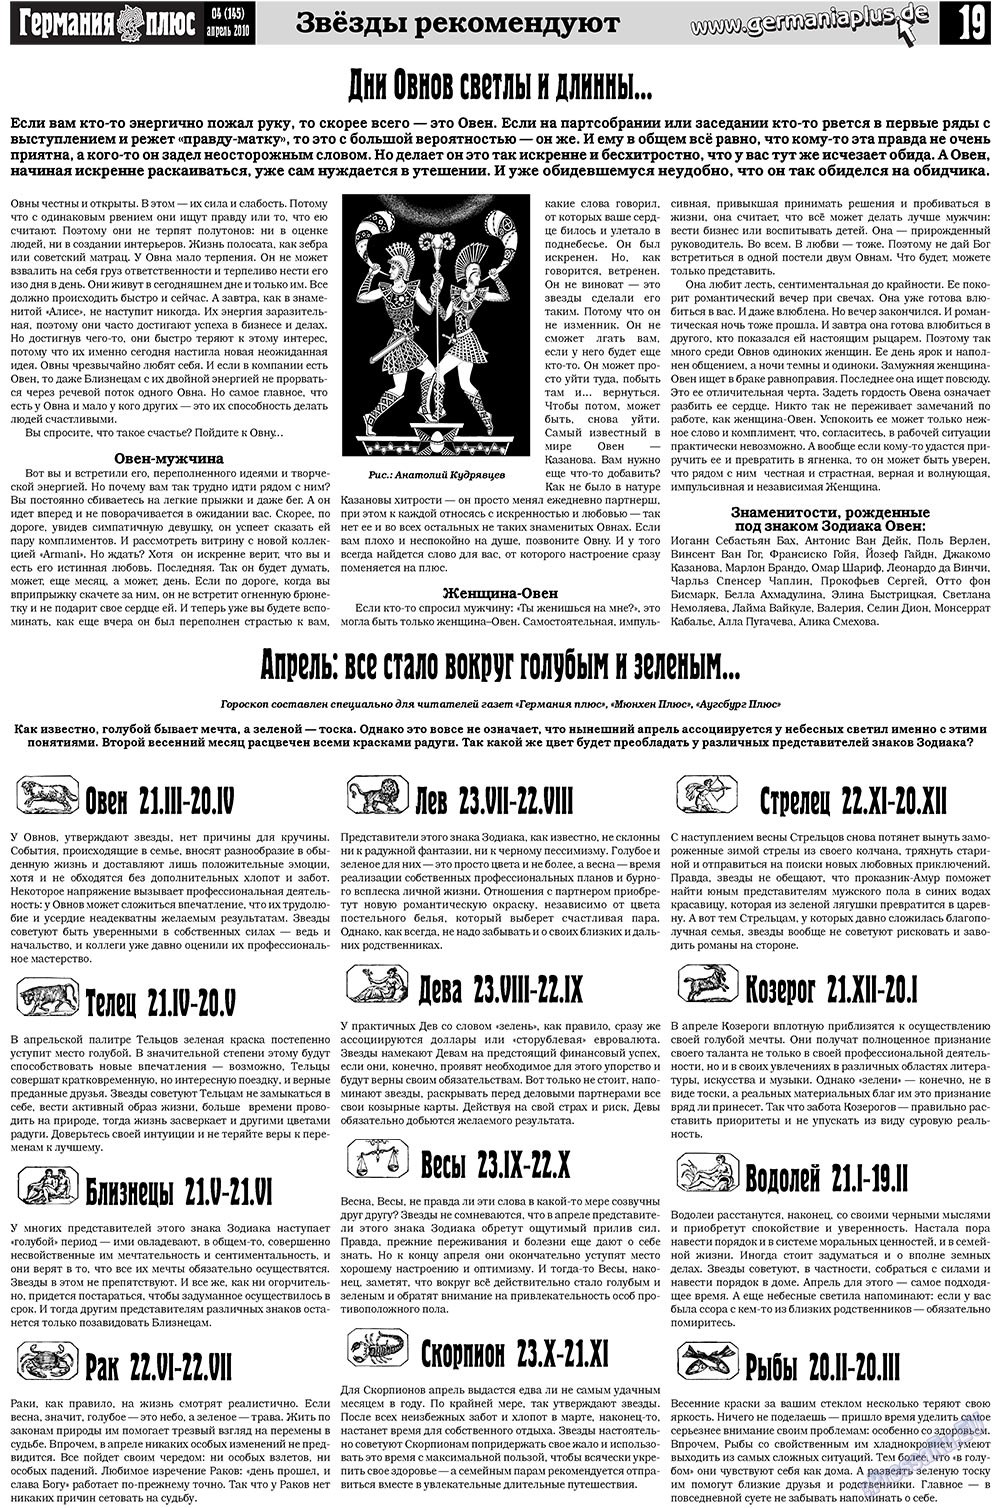 Германия плюс, газета. 2010 №4 стр.19